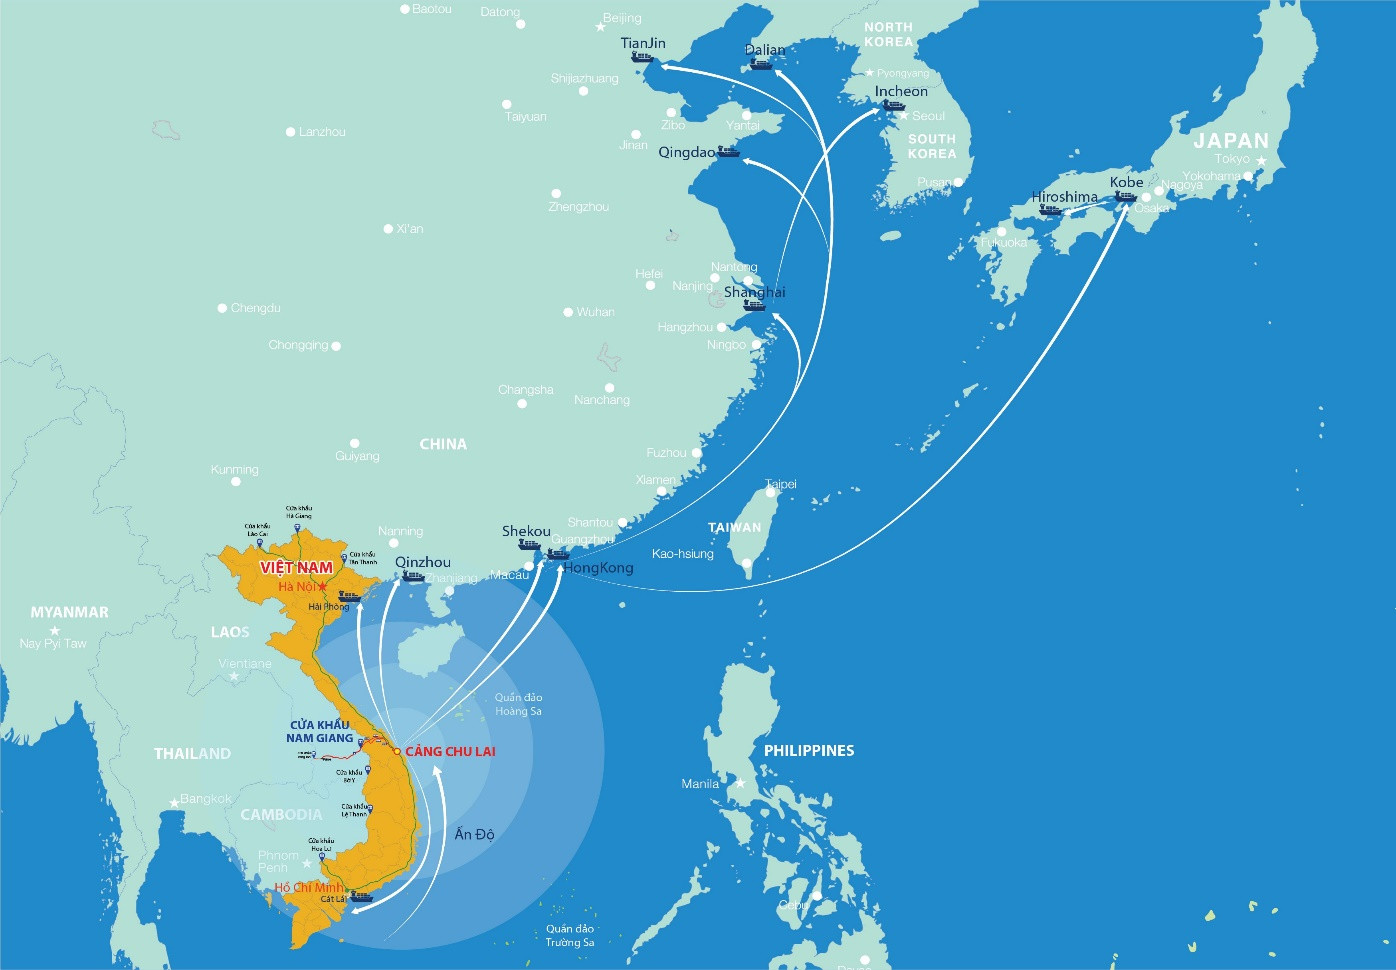 Giải pháp Logistics qua Cửa khẩu quốc tế Nam Giang cho doanh nghiệp Việt, Lào - Ảnh 1.